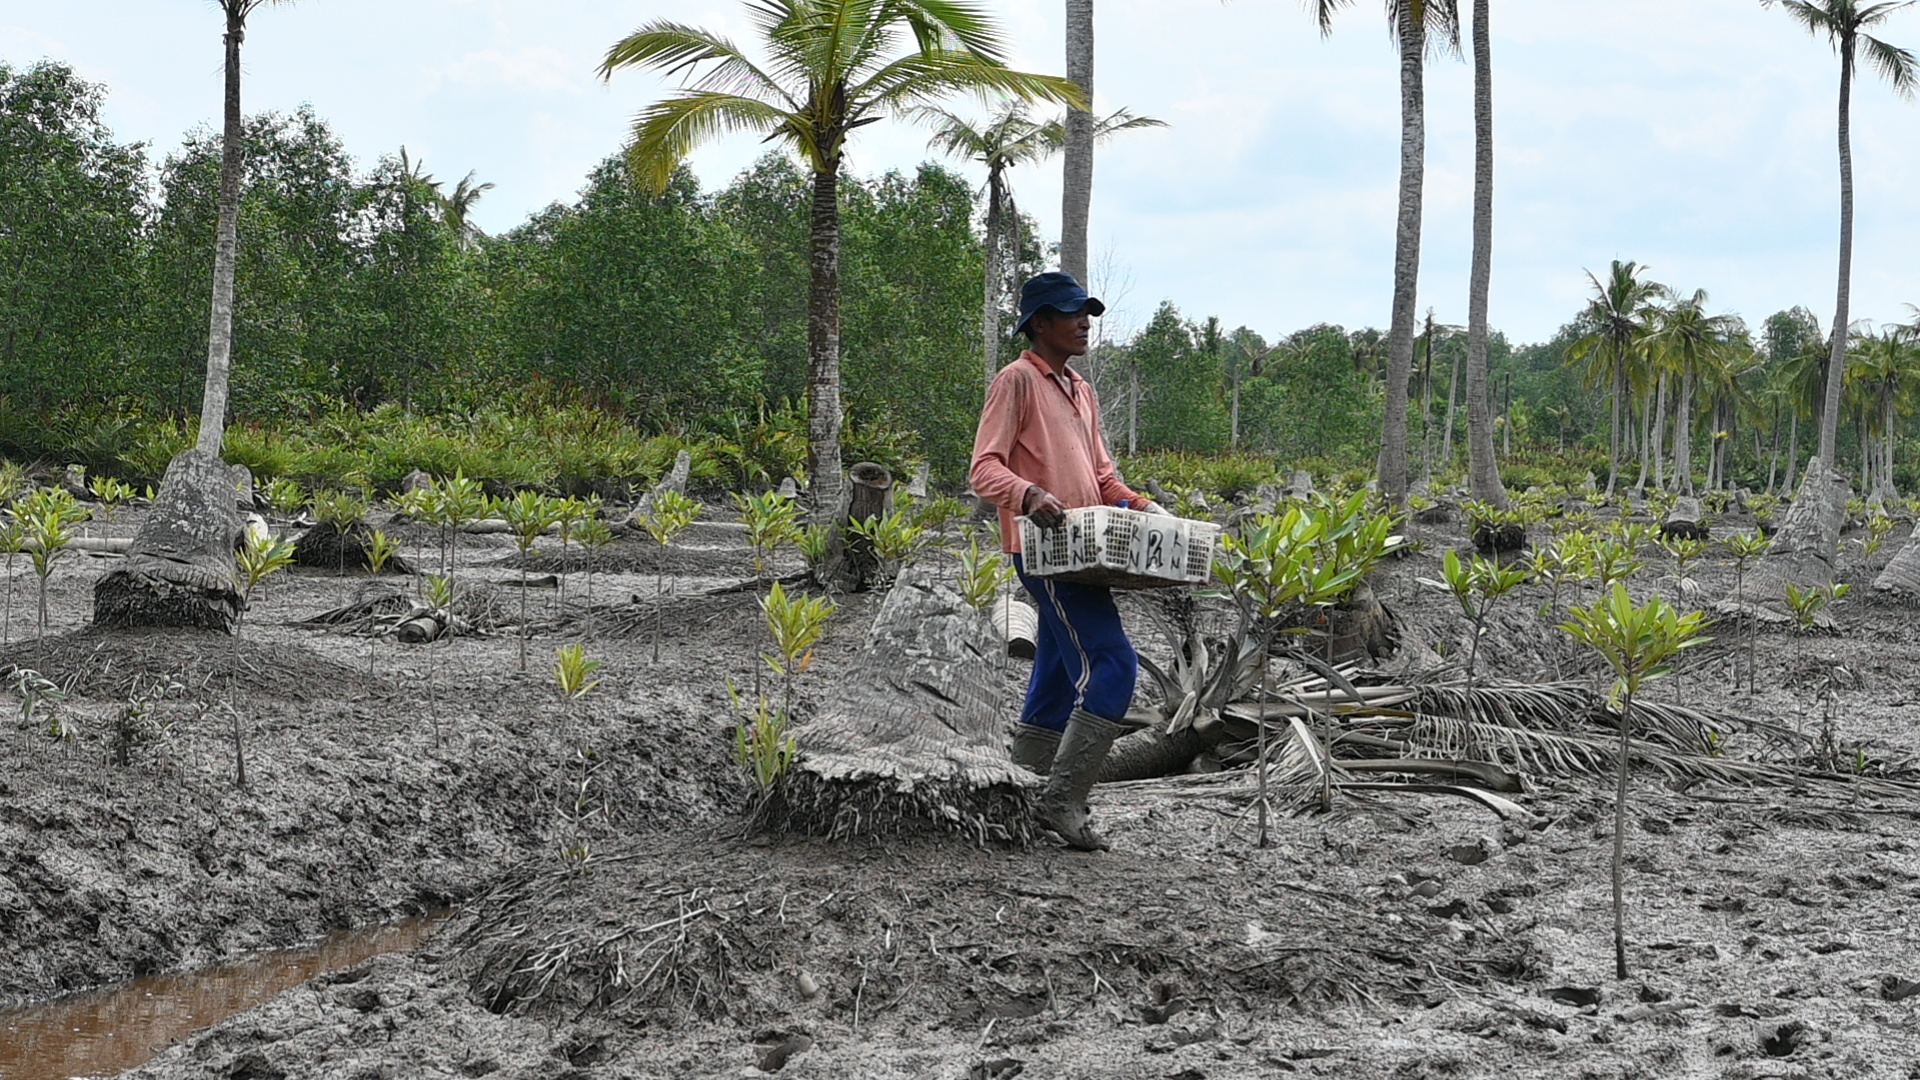 Proses penaburan benih mangrove di bekas kebun kelapa yang terintrusi air laut (Ehdra Beta Masran/Blue Forests)